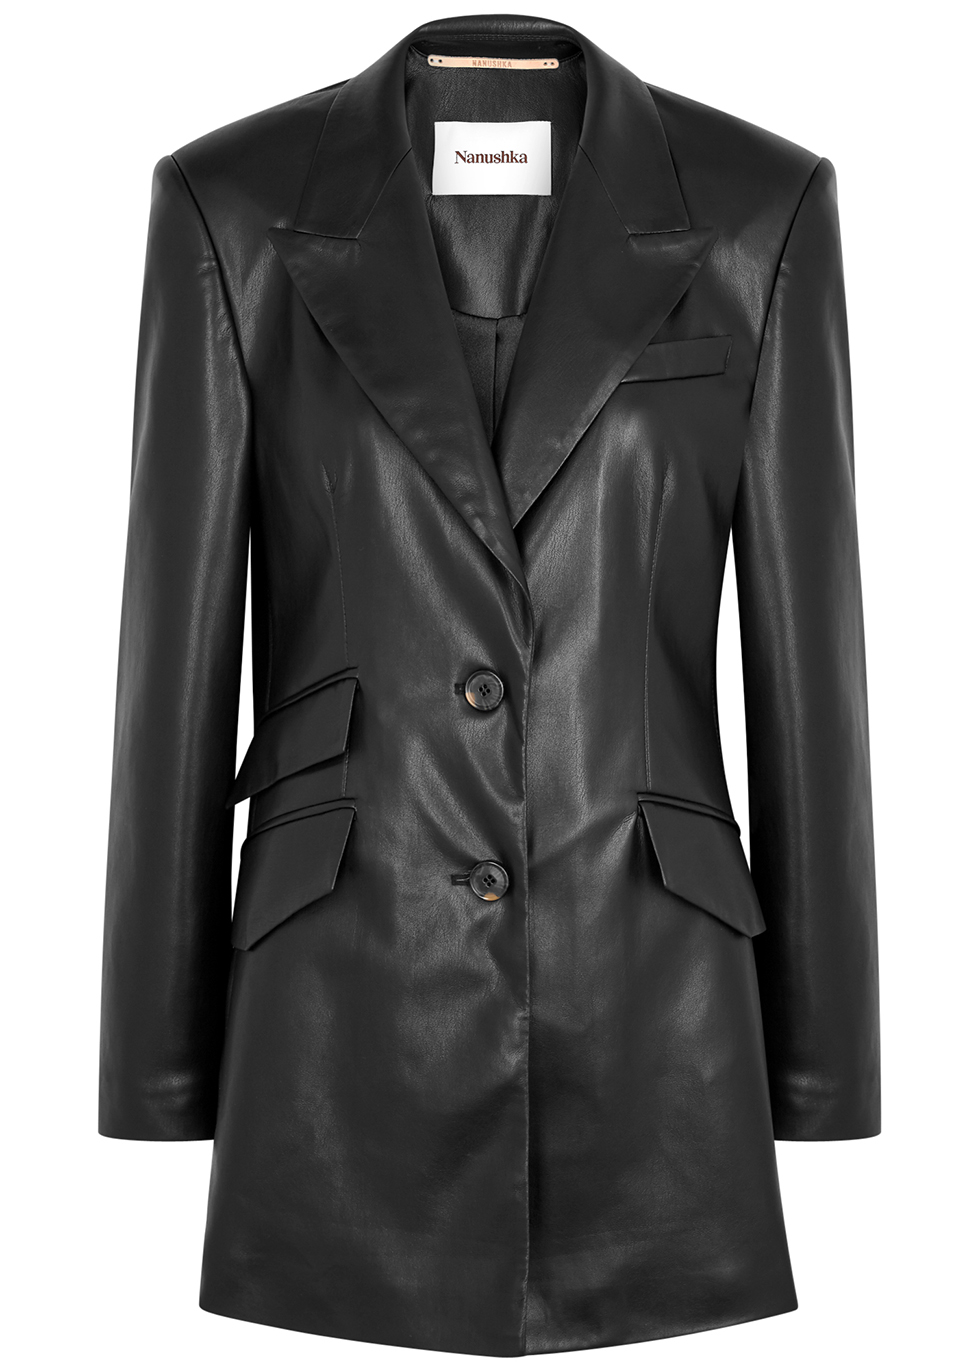 Cancun black faux leather blazer